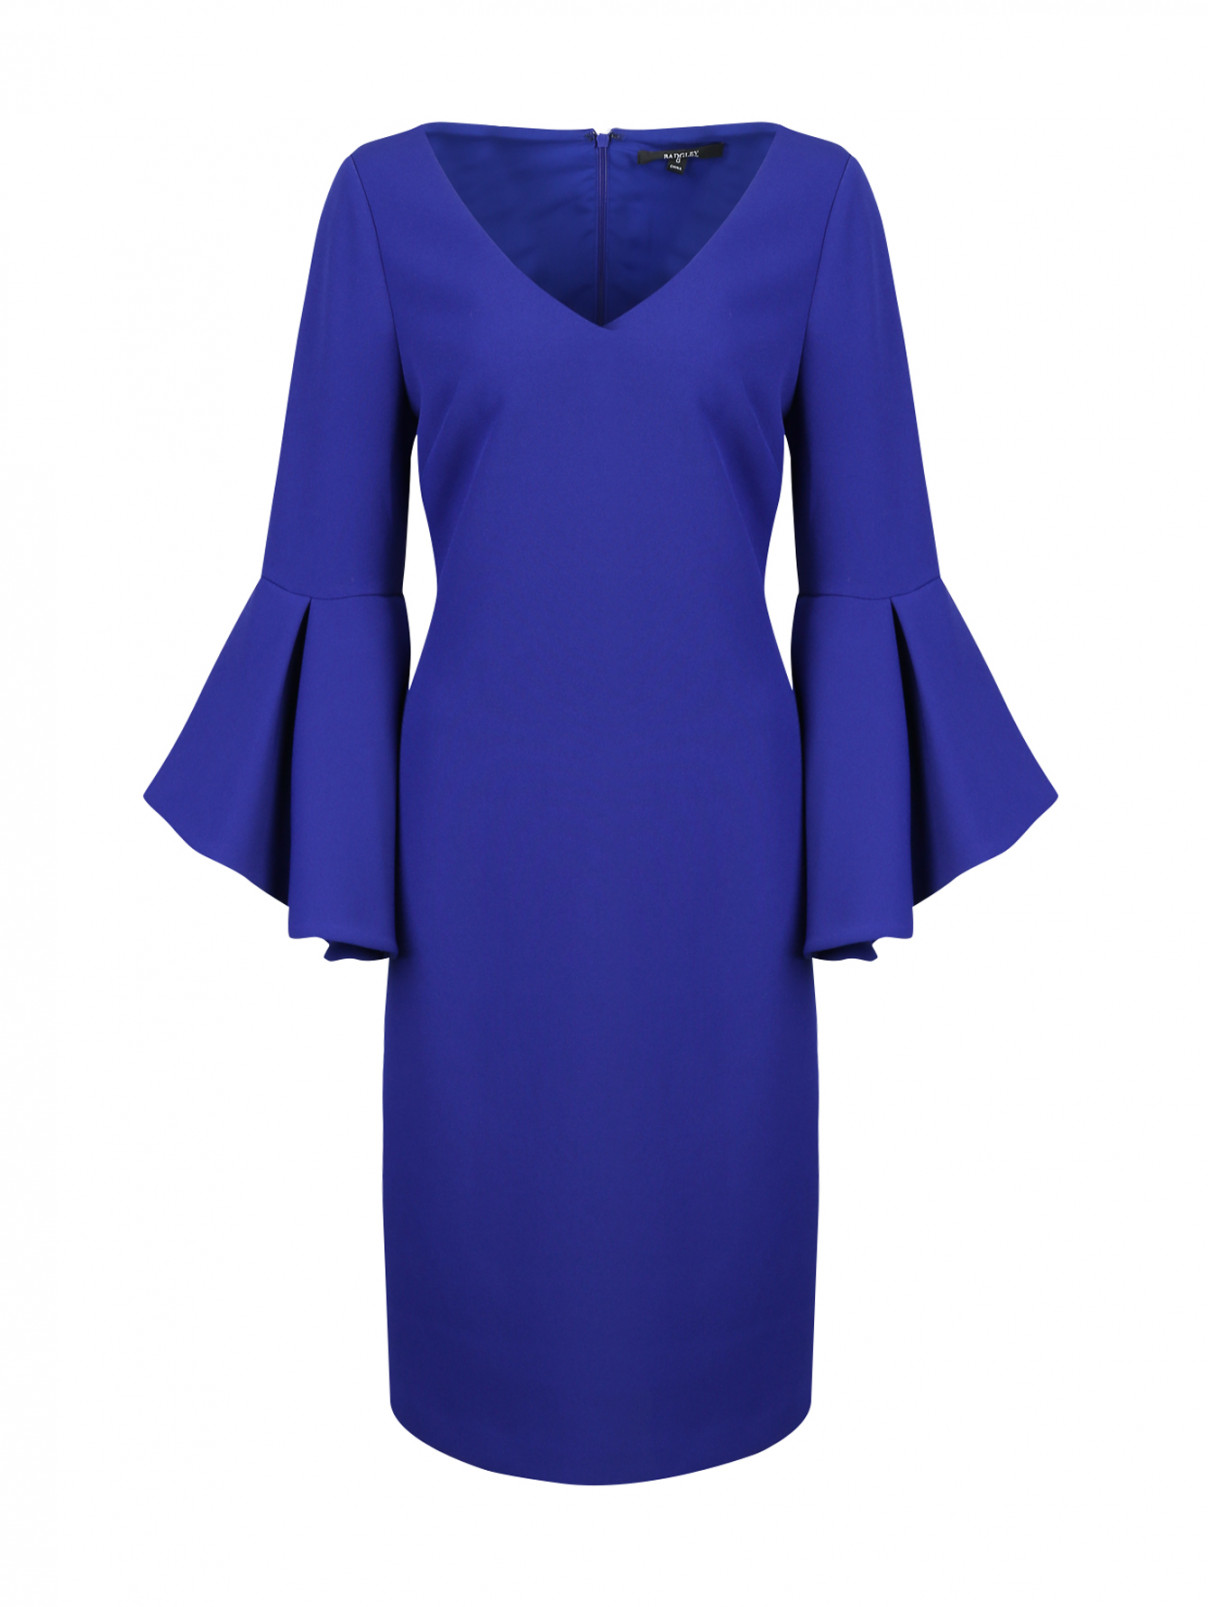 Платье приталенное, с воланами на рукавах Badgley Mischka  –  Общий вид  – Цвет:  Синий